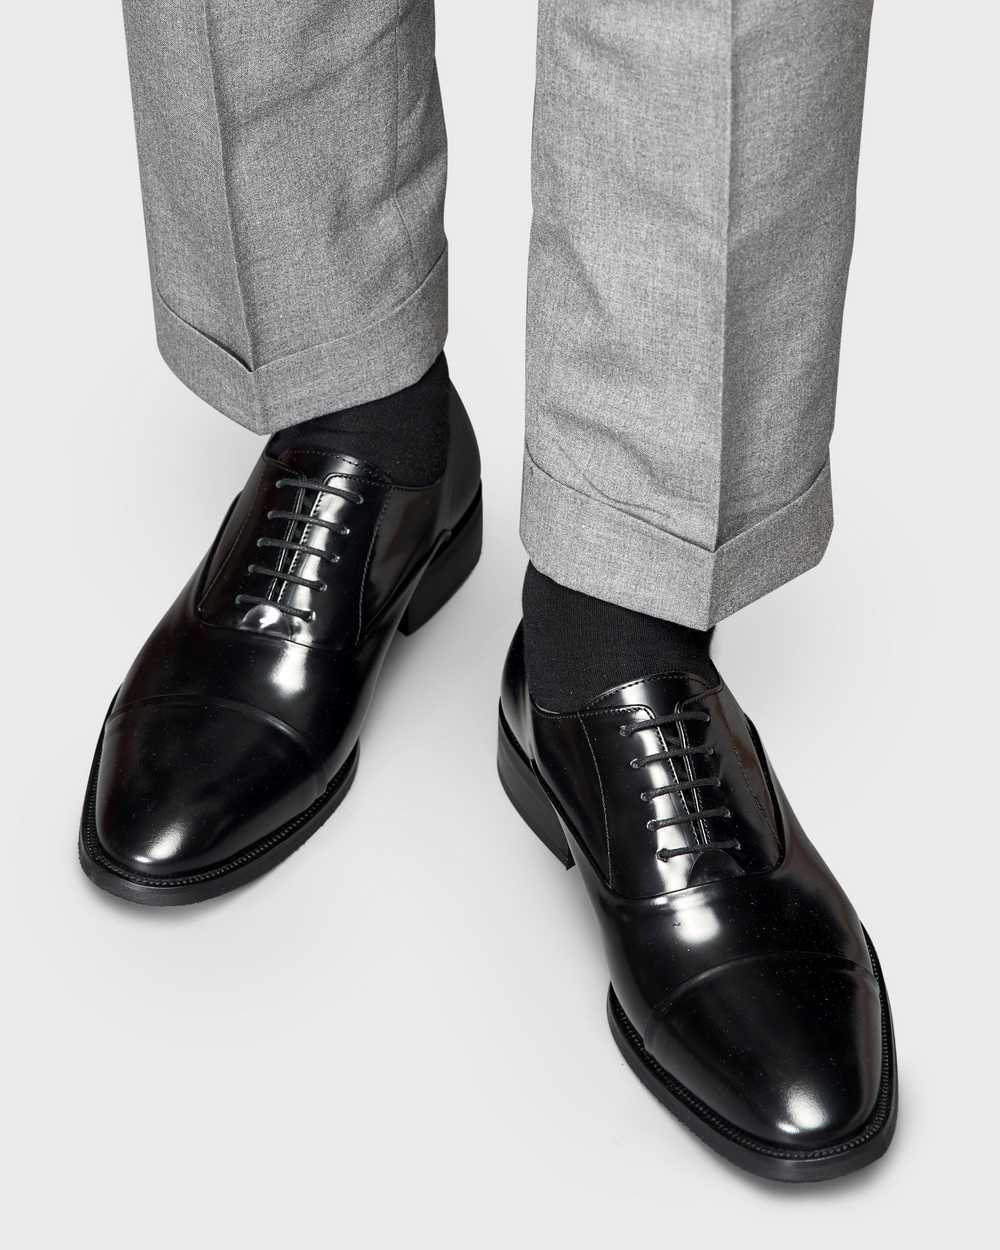 Туфли мужские оксфорды черные, глянцевая кожа, с отрезным мысом